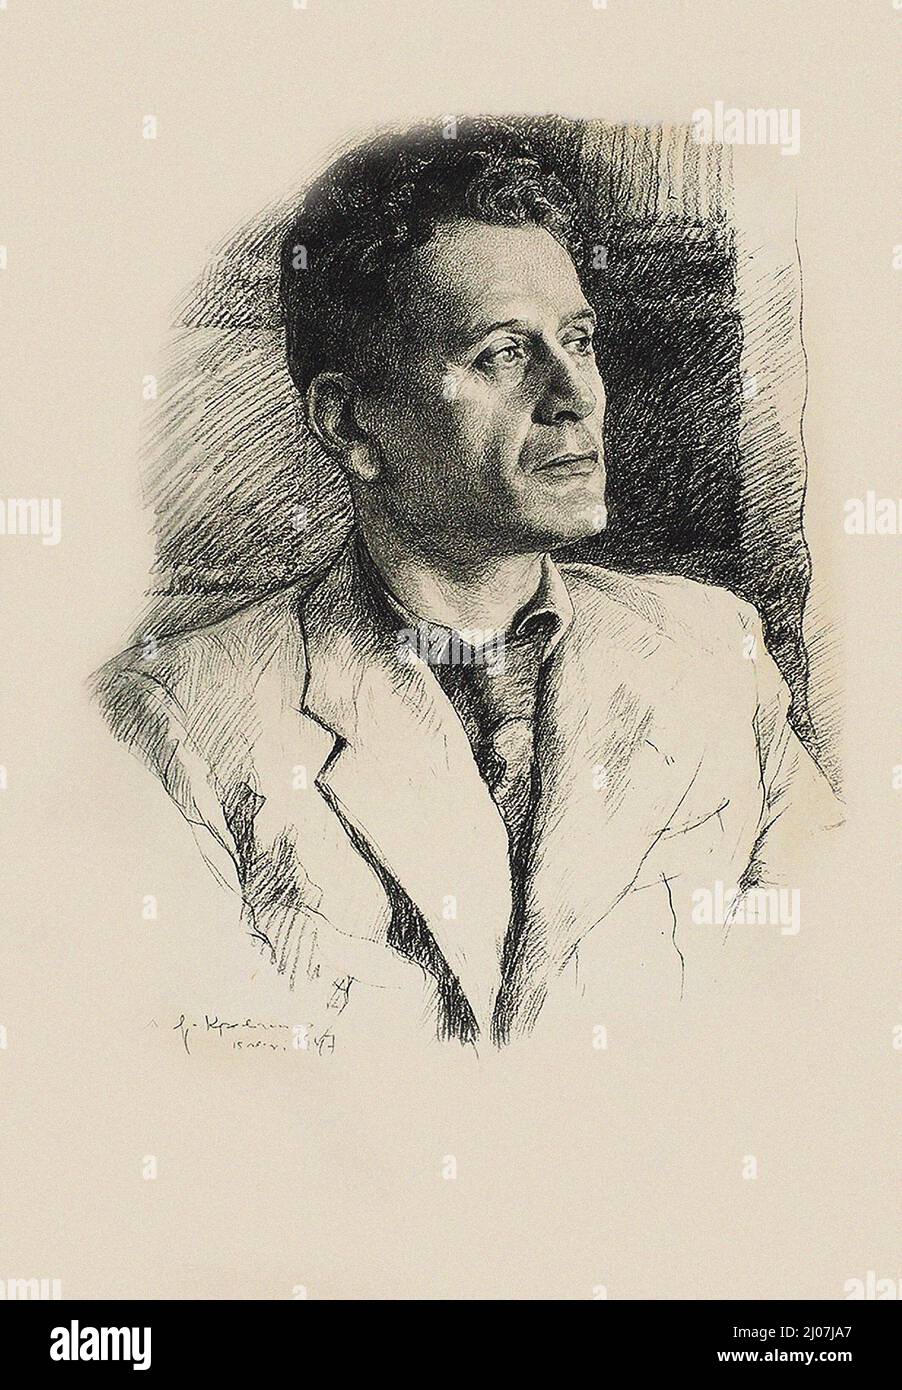 Porträt des jüdischen Dichters Peretz Markish (1895-1952). Museum: PRIVATE SAMMLUNG. Autor: Alexander Nikolajewitsch Jar-Krawtschenko. Stockfoto